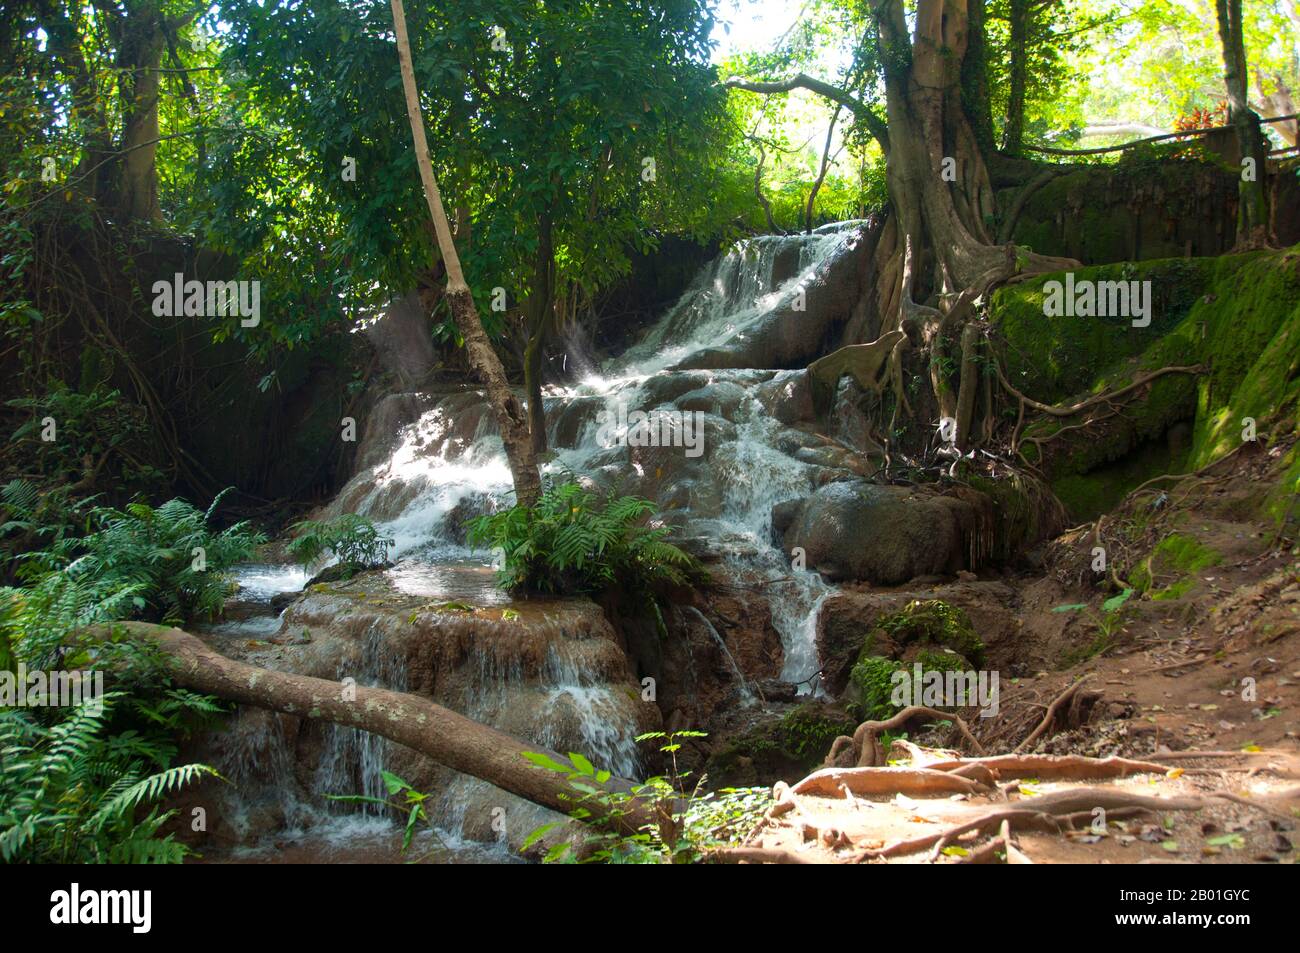 Thailand: Suan Hom Wasserfall in der Nähe von Suan hin Pha Ngam, Provinz Loei. Die Provinz Loei (Thai: เลย) befindet sich im oberen Nordosten Thailands. Die benachbarten Provinzen sind (von Osten nach rechts) Nong Khai, Udon Thani, Nongbua Lamphu, Khon Kaen, Phetchabun, Phitsanulok. Im Norden grenzt sie an die Provinzen Xaignabouli und Vientiane in Laos. Die Provinz ist von niedrigen Bergen bedeckt, während die Hauptstadt Loei in einem fruchtbaren Becken liegt. Der Fluss Loei, der durch die Provinz fließt, ist ein Nebenfluss des Mekong, der zusammen mit dem kleineren Fluss Hueang die nördliche Grenze der Provinz bildet. Stockfoto